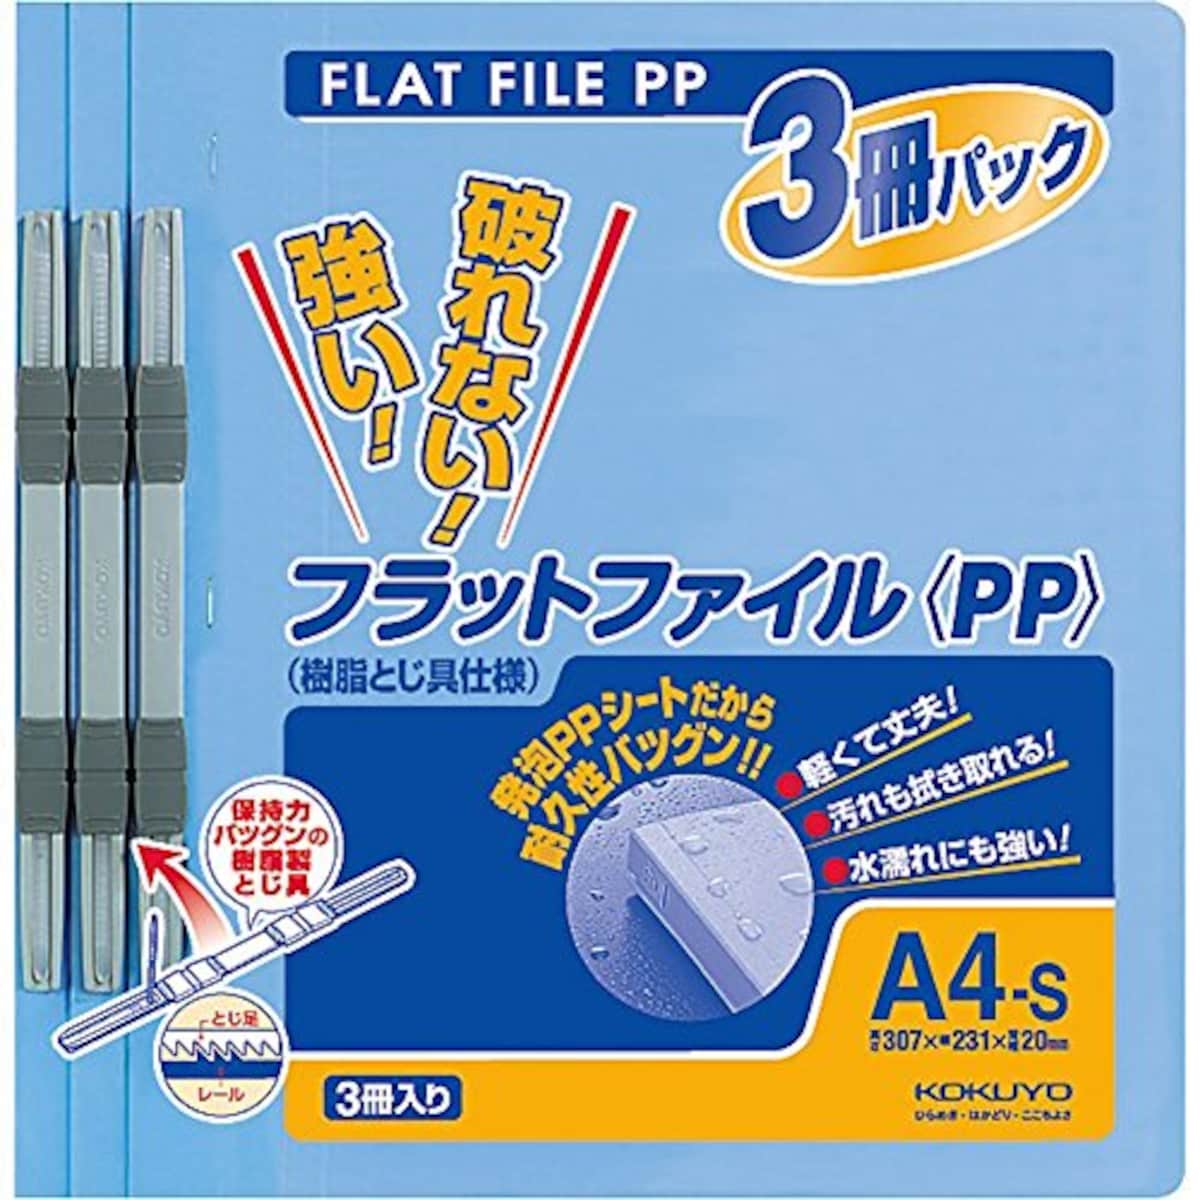 ファイル フラットファイルPP A4